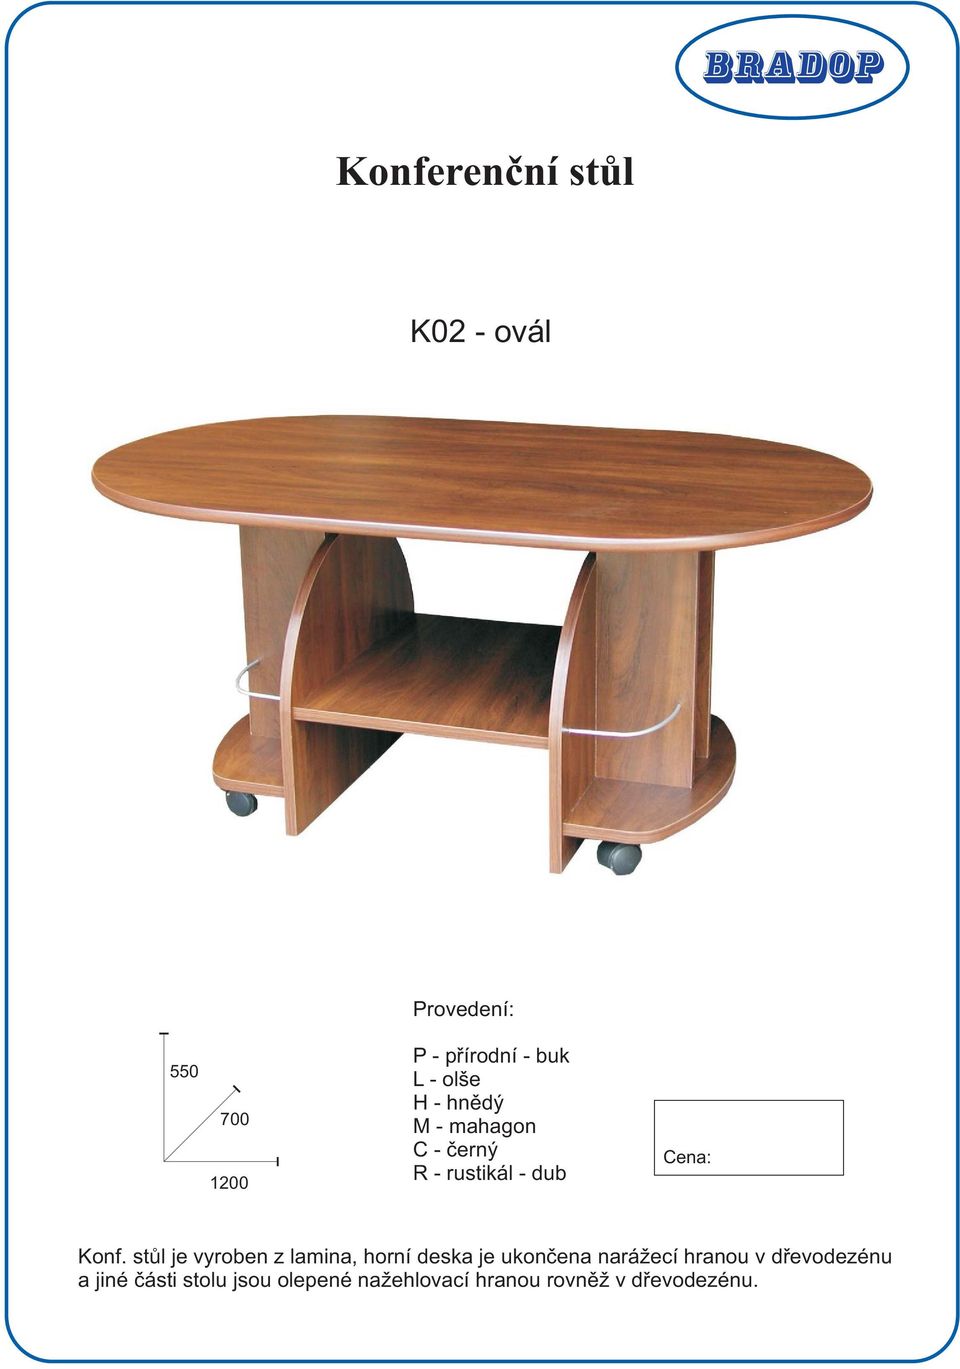 stůl je vyroben z lamina, horní deska je ukončena narážecí